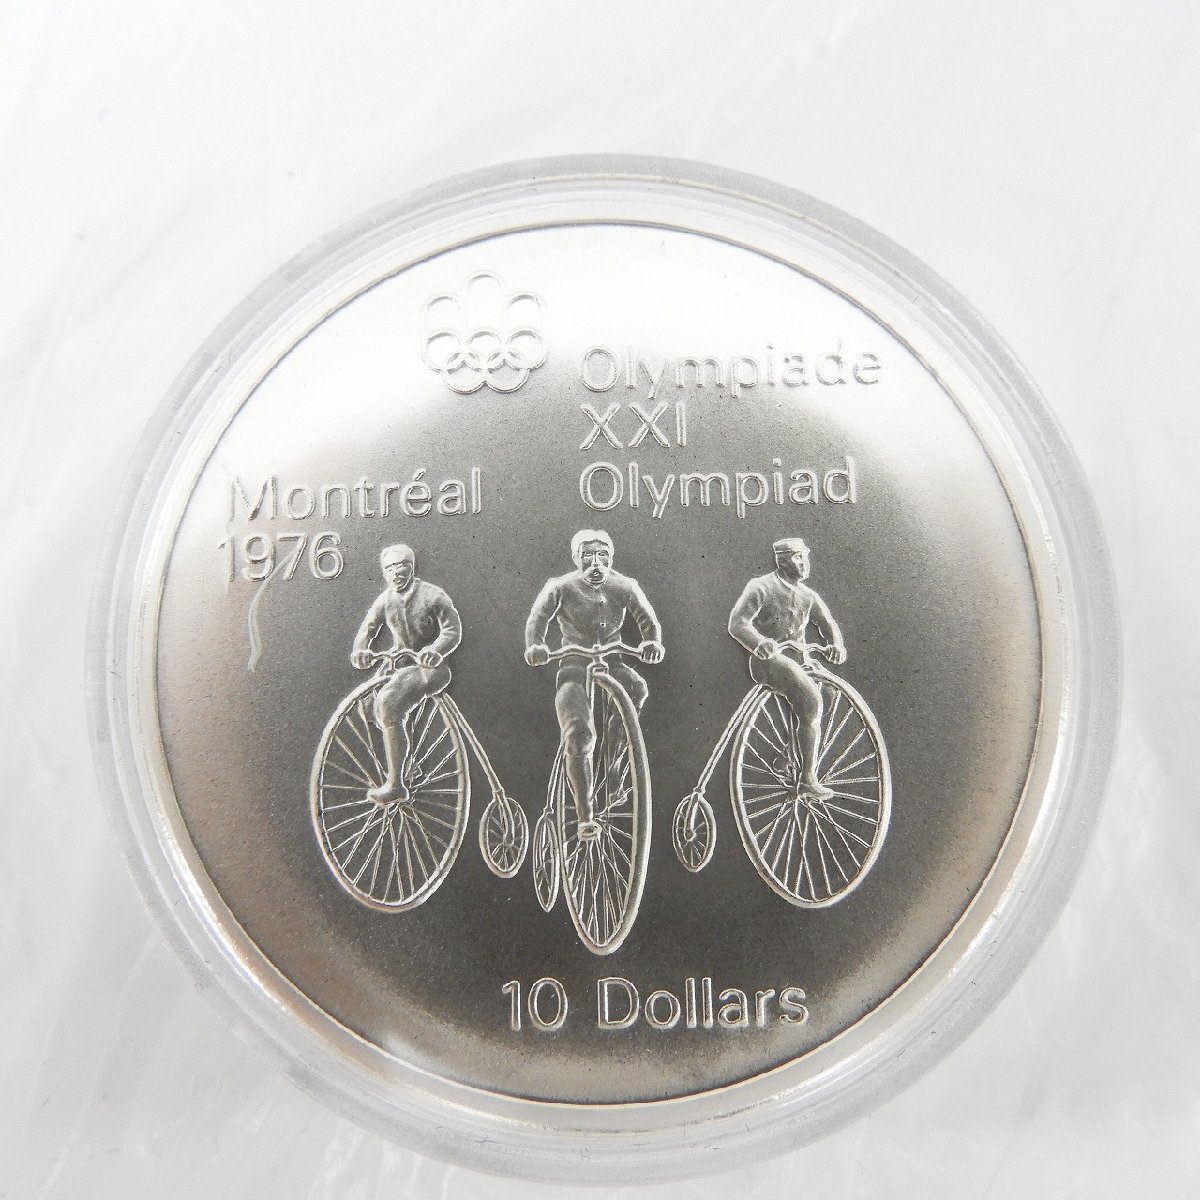 【記念コイン】カナダモントリオールオリンピック 1976年記念銀貨 10ドル+5ドル 合計4枚セット 11523175 0318_画像4